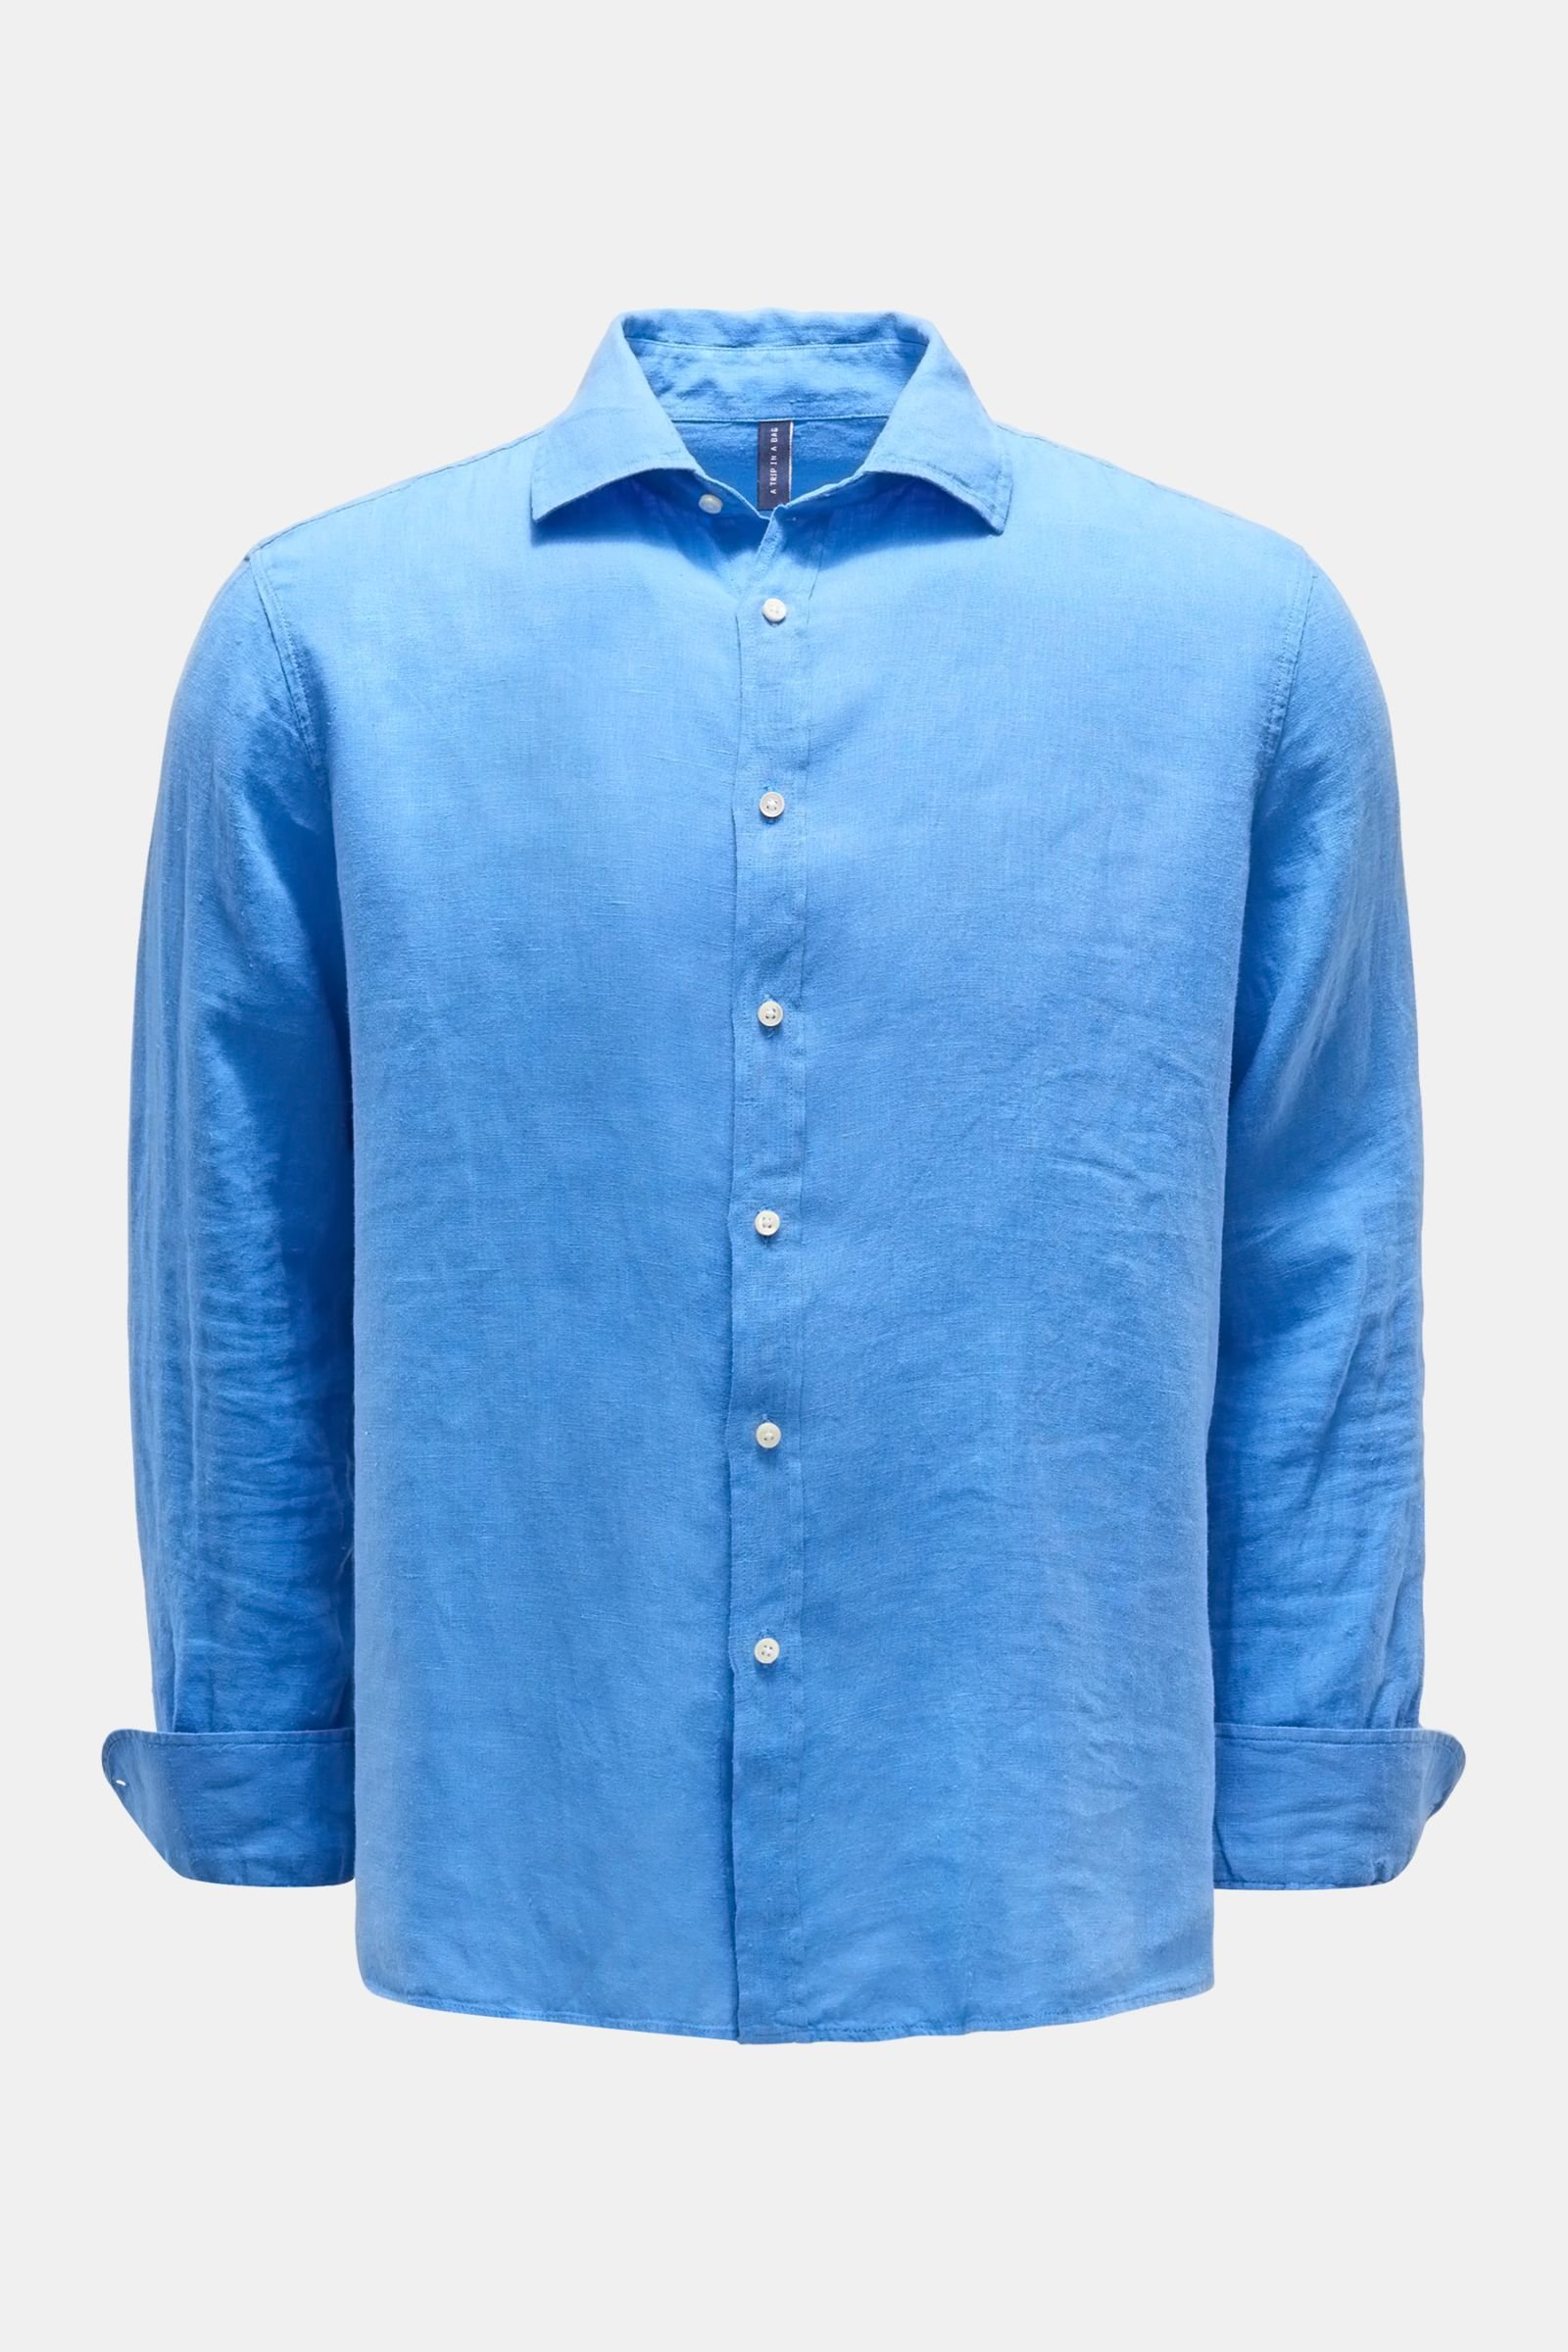 'Linen Shirt' with shark collar blue